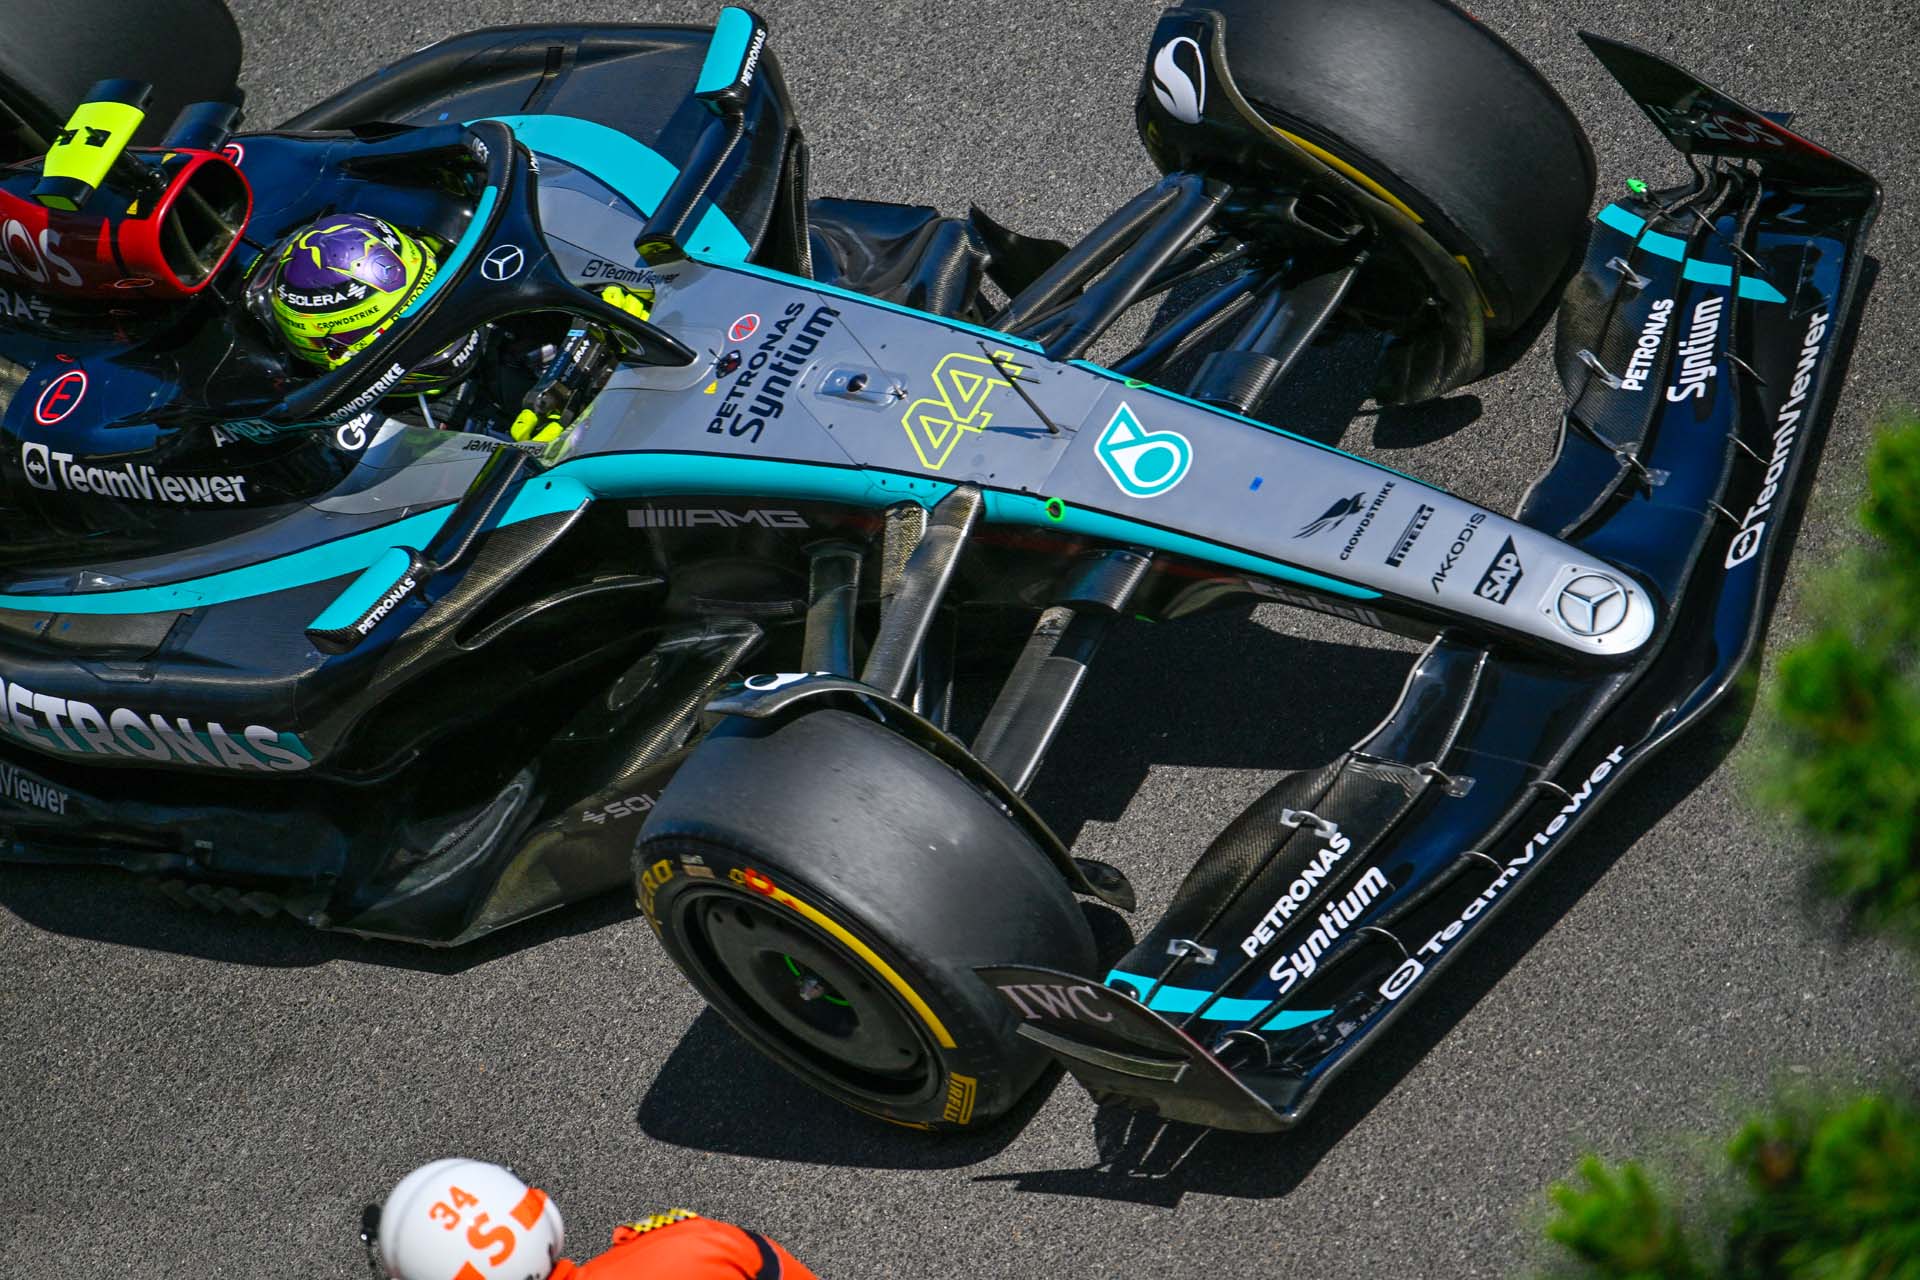 Az F1 világában: Hamilton támogatja Russellt az új első szárny fejlesztésében – Különleges összefogás a Mercedes csapatában